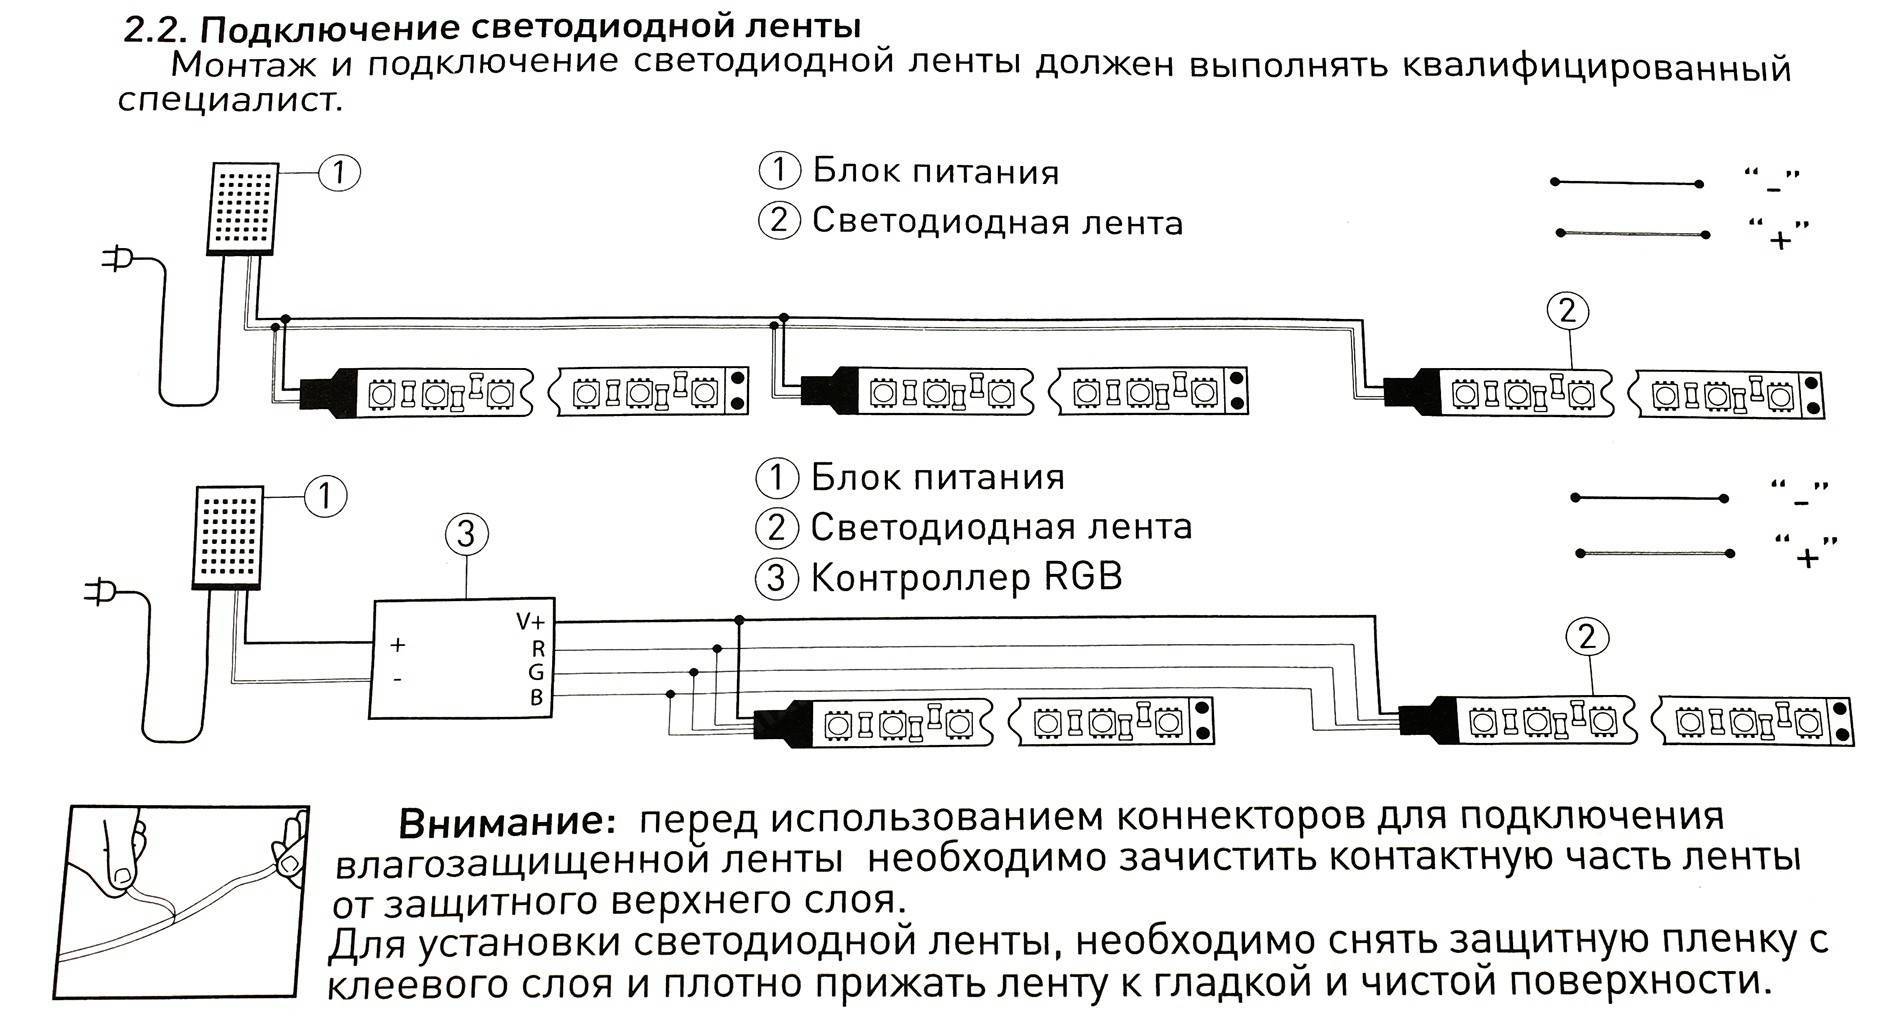 Подбор блока питания для светодиодной ленты: типы, расчёт, схемы подключений